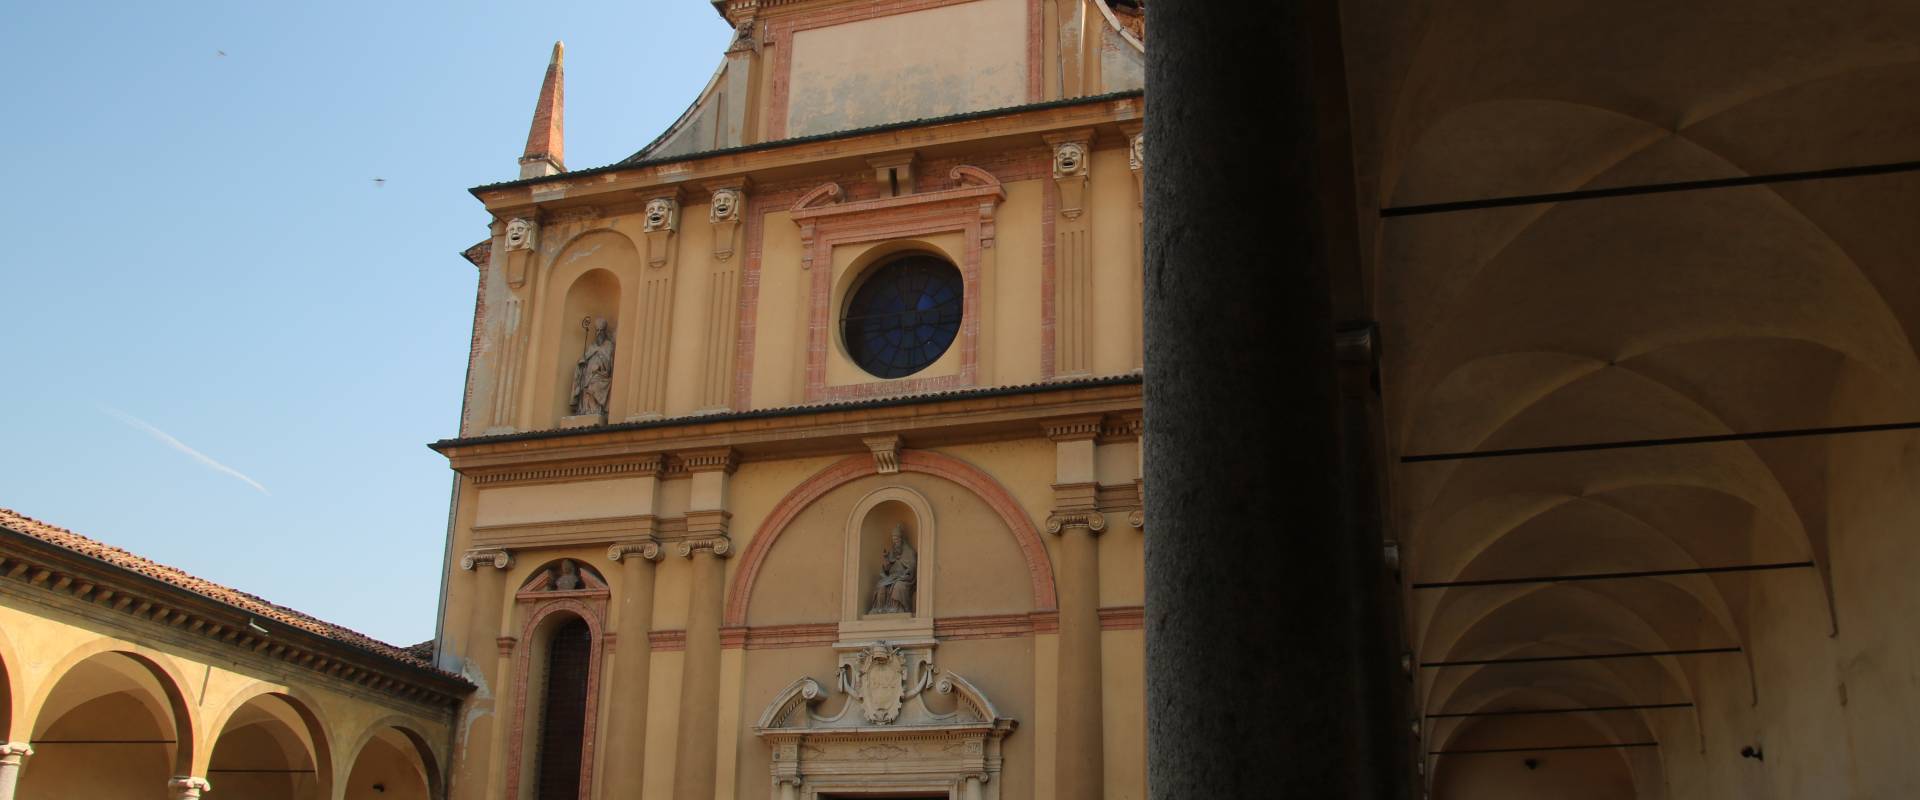 Chiesa di San Sisto (Piacenza), esterno 11 foto di Mongolo1984